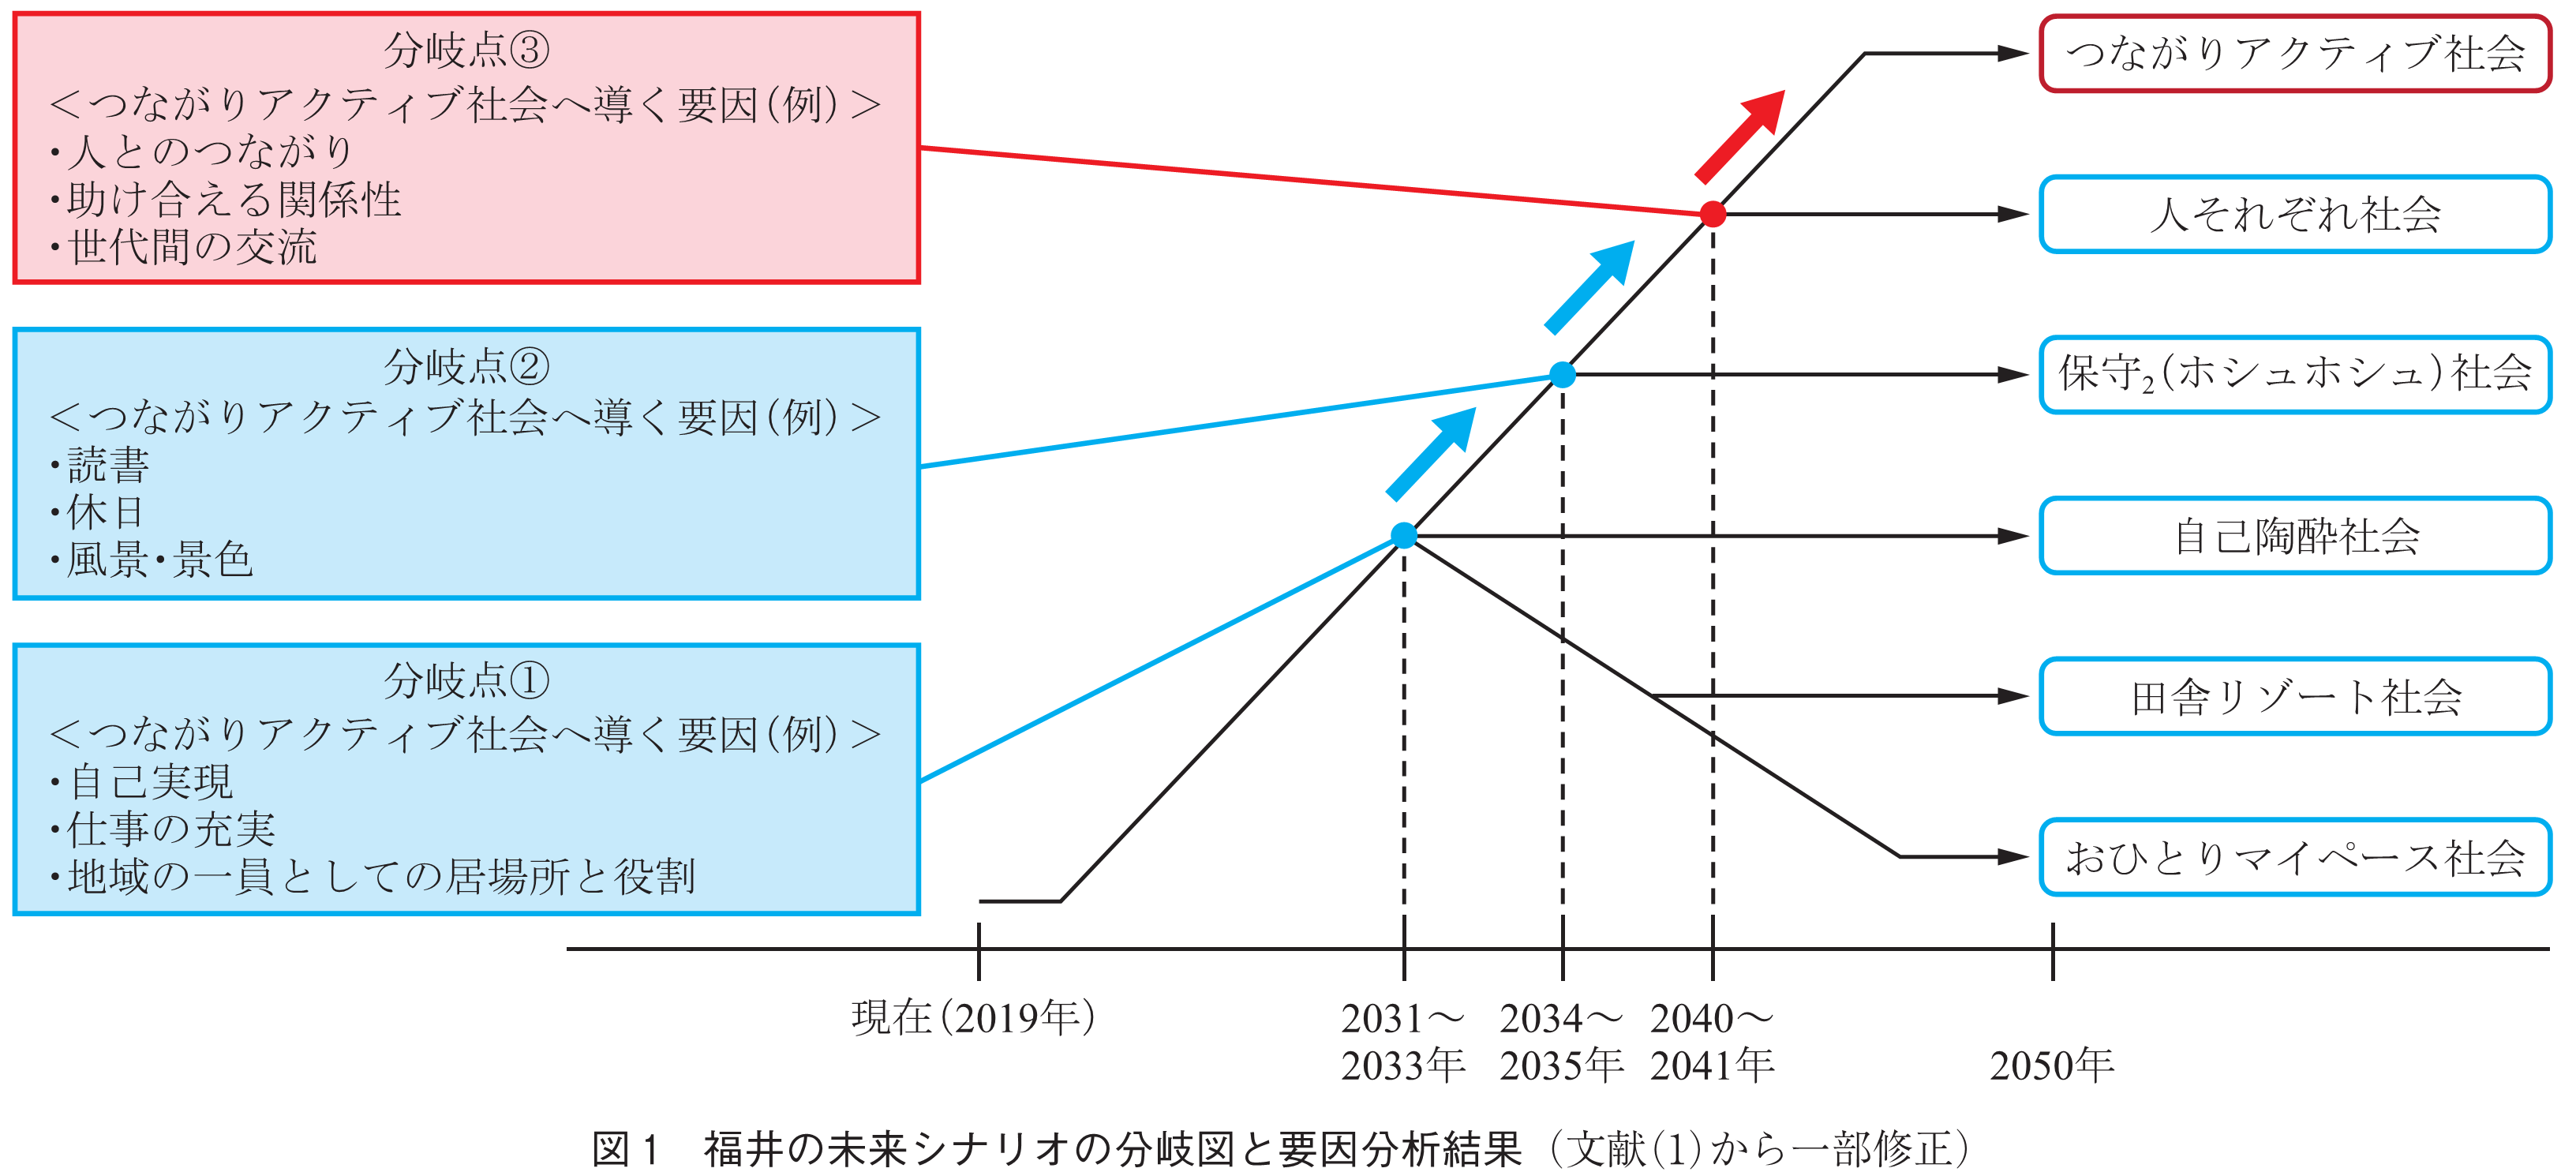 図1　福井の未来シナリオの分岐図と要因分析結果（文献(1)から一部修正）